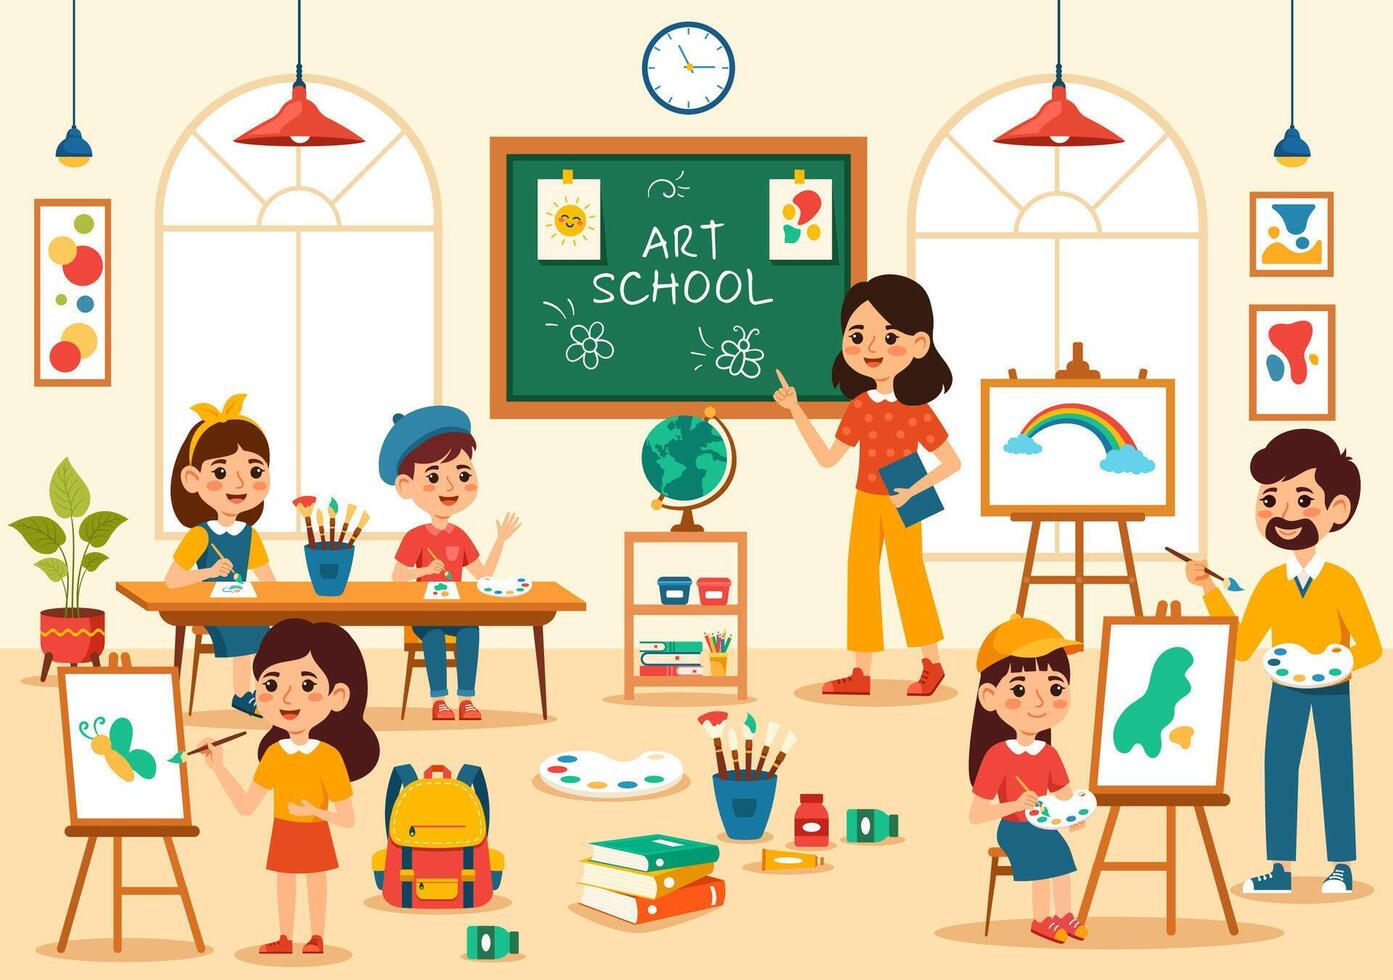 konst skola vektor illustration med barn av målning med leva modell eller objekt använder sig av verktyg och Utrustning i platt tecknad serie bakgrund design